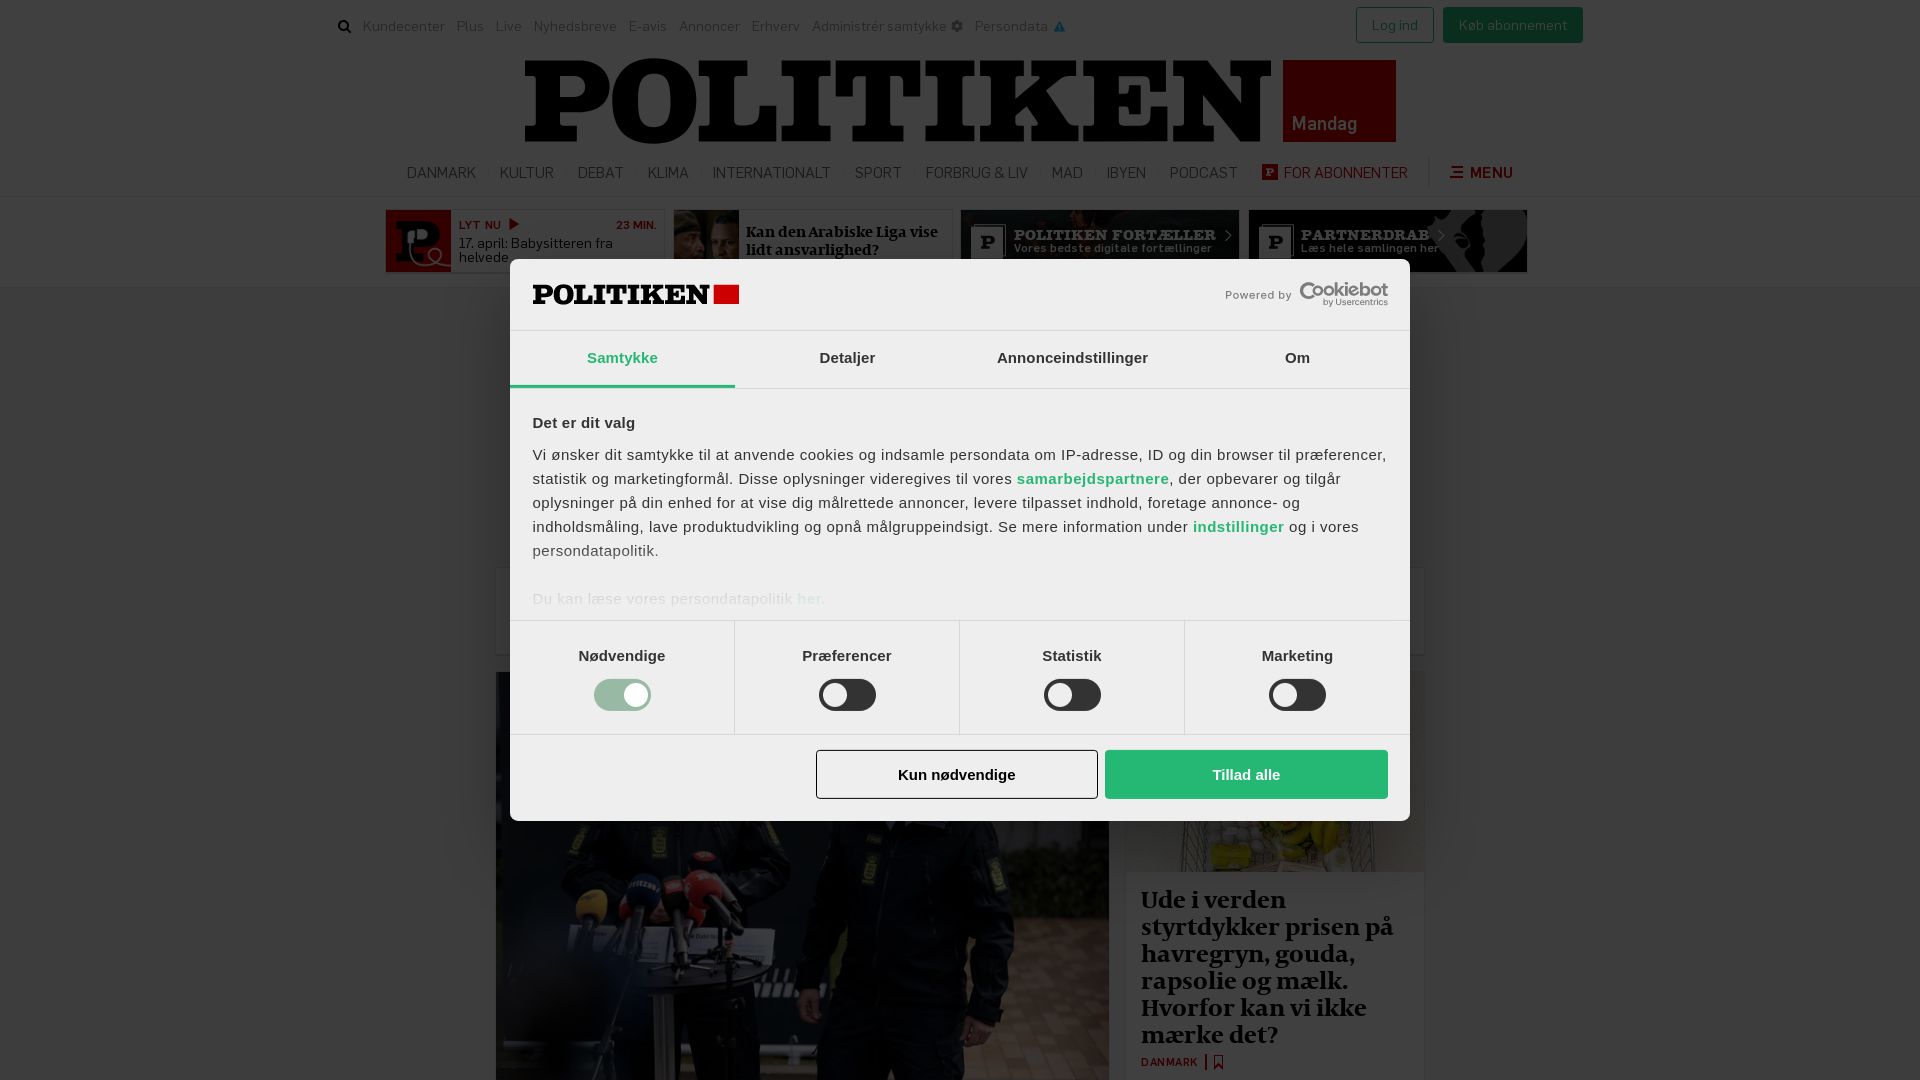 Website status politiken.dk is   ONLINE